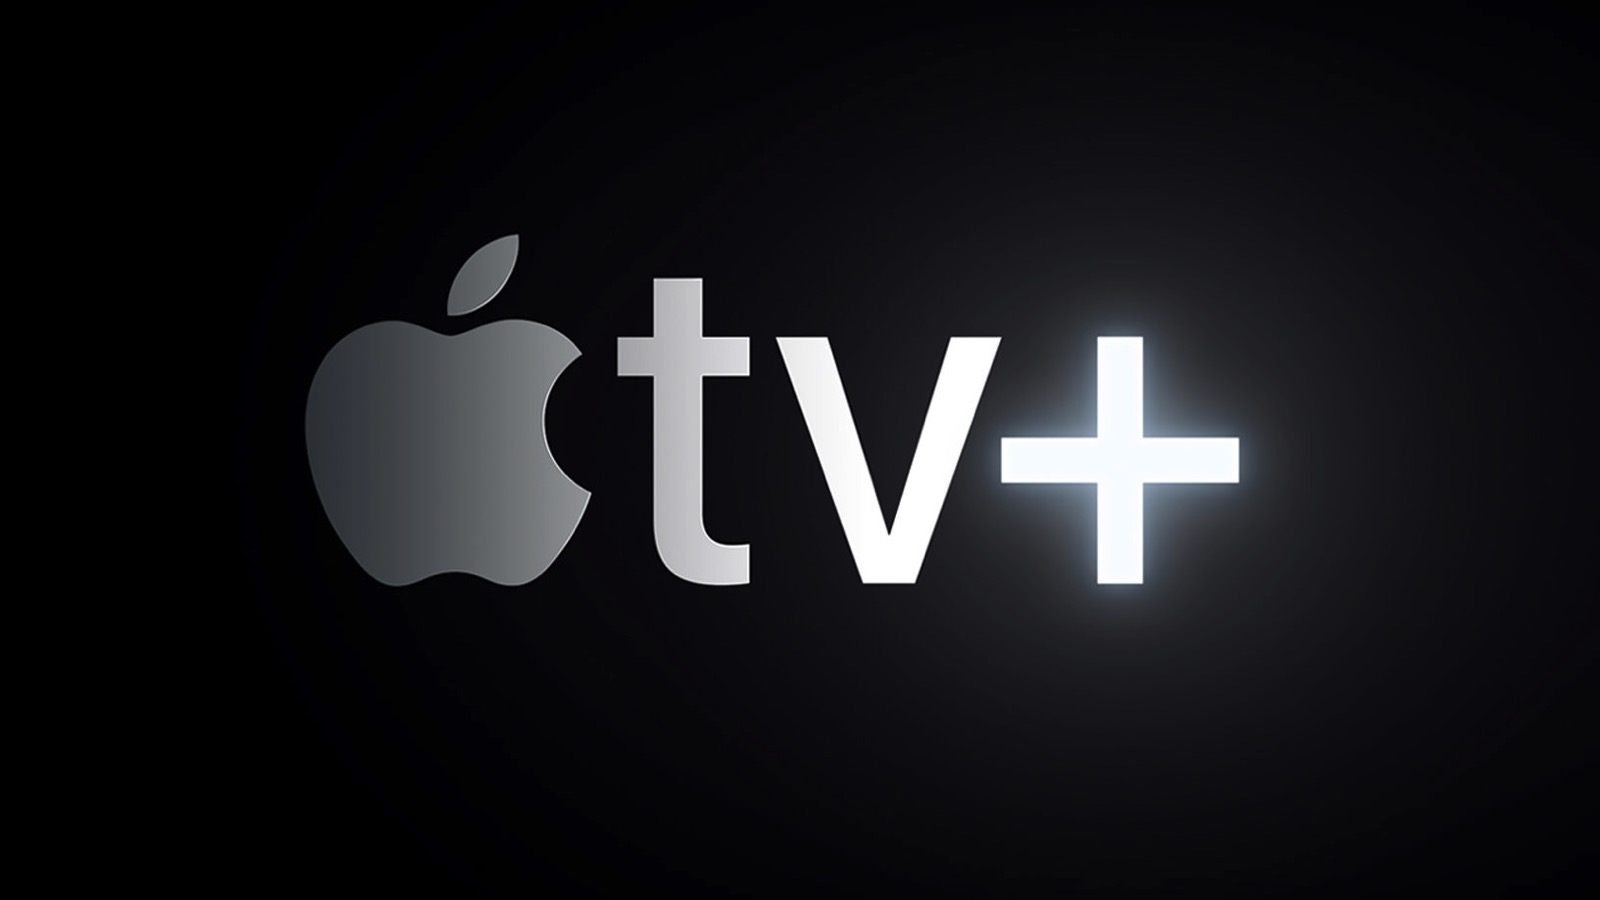 Apple-introduces-apple-tv-plus-03252019.jpg